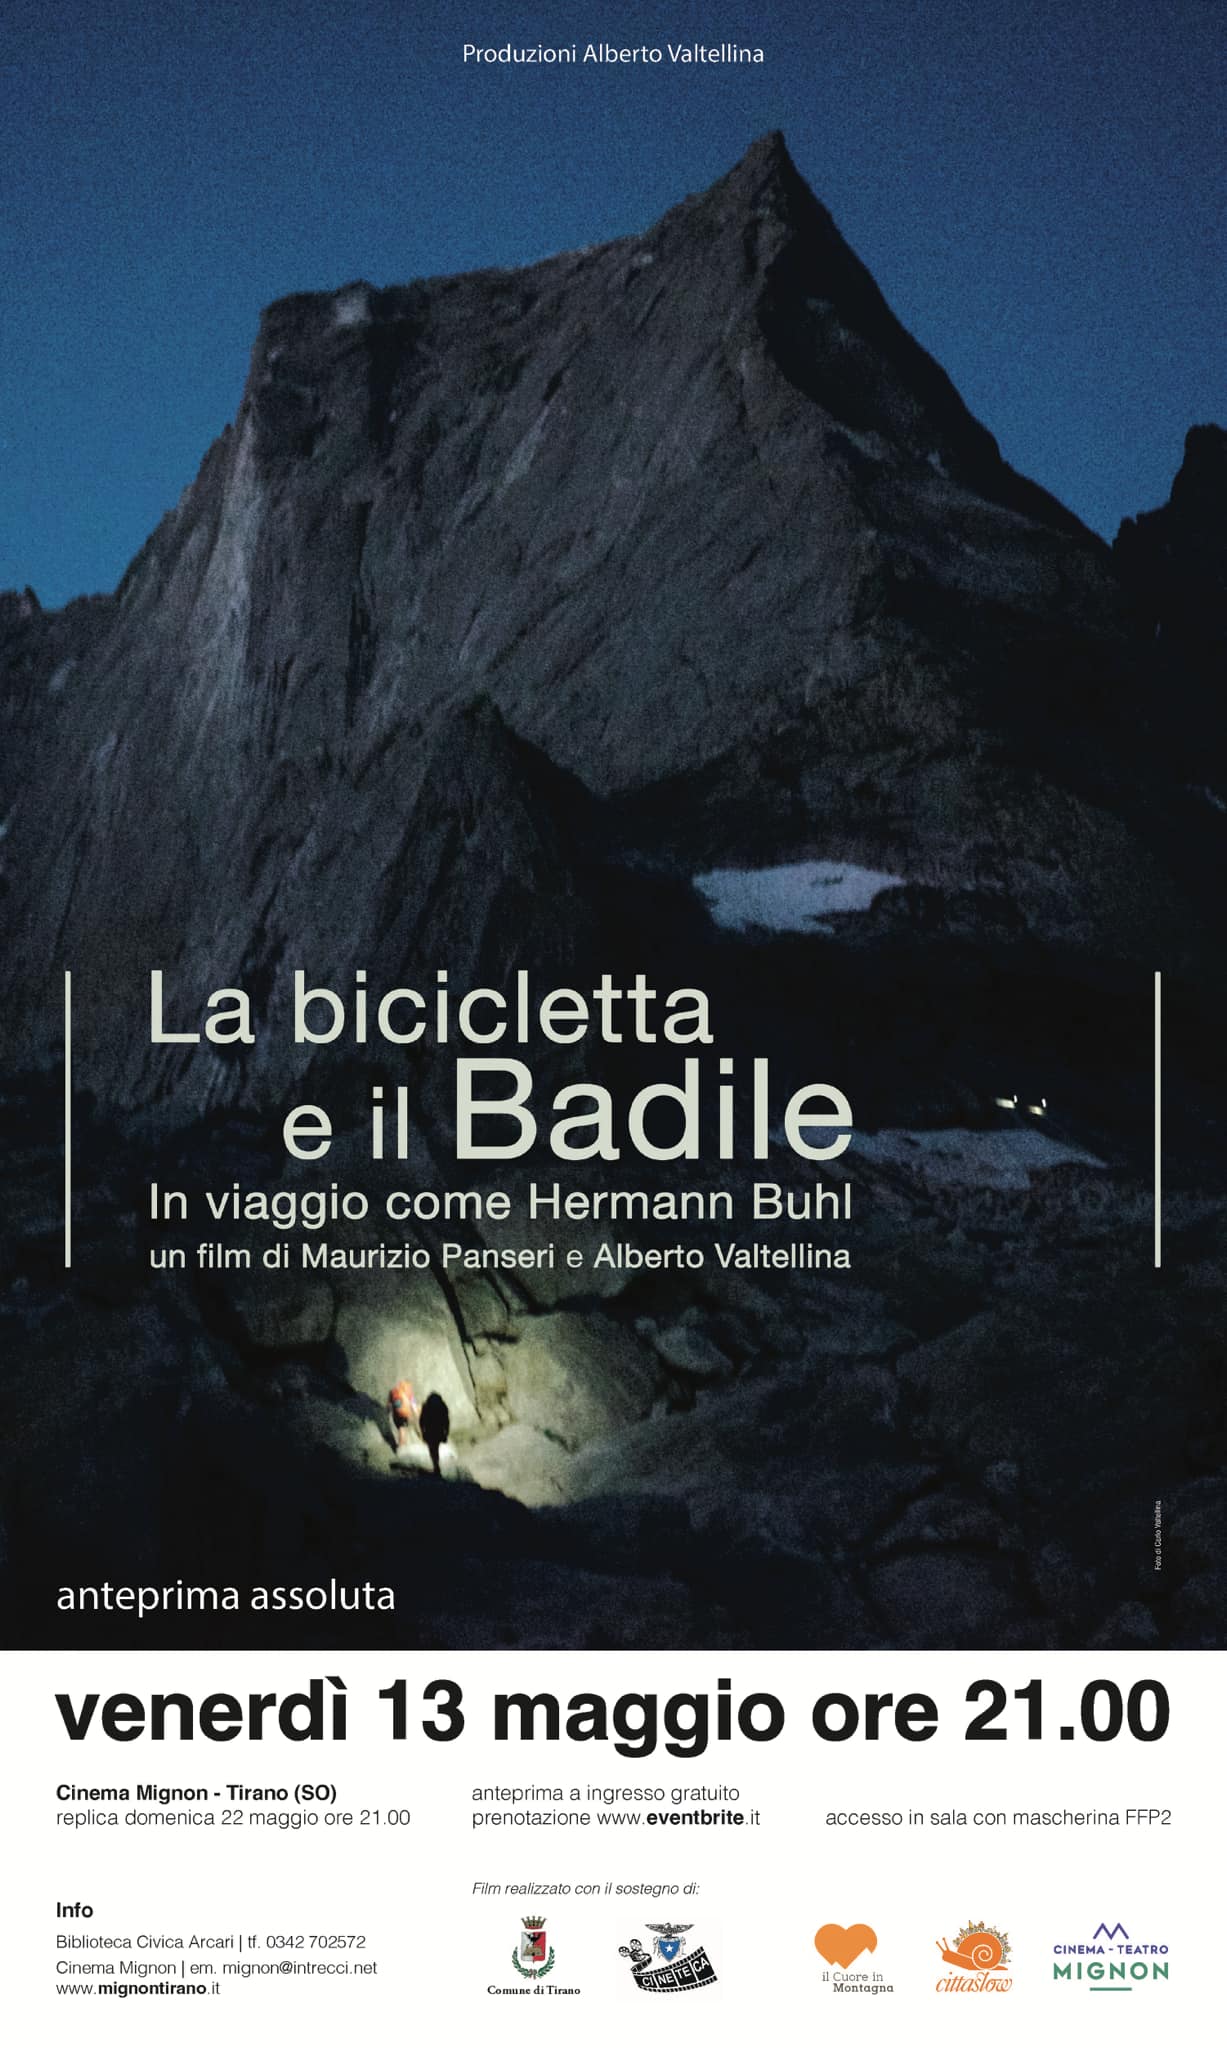 A Tirano “La bicicletta e il Badile” anteprima assoluta del film sul celebre alpinista austriaco Hermann Buhl, girato fra Austria, Valtellina e Valchiavenna   Sulle tracce di Buhl.